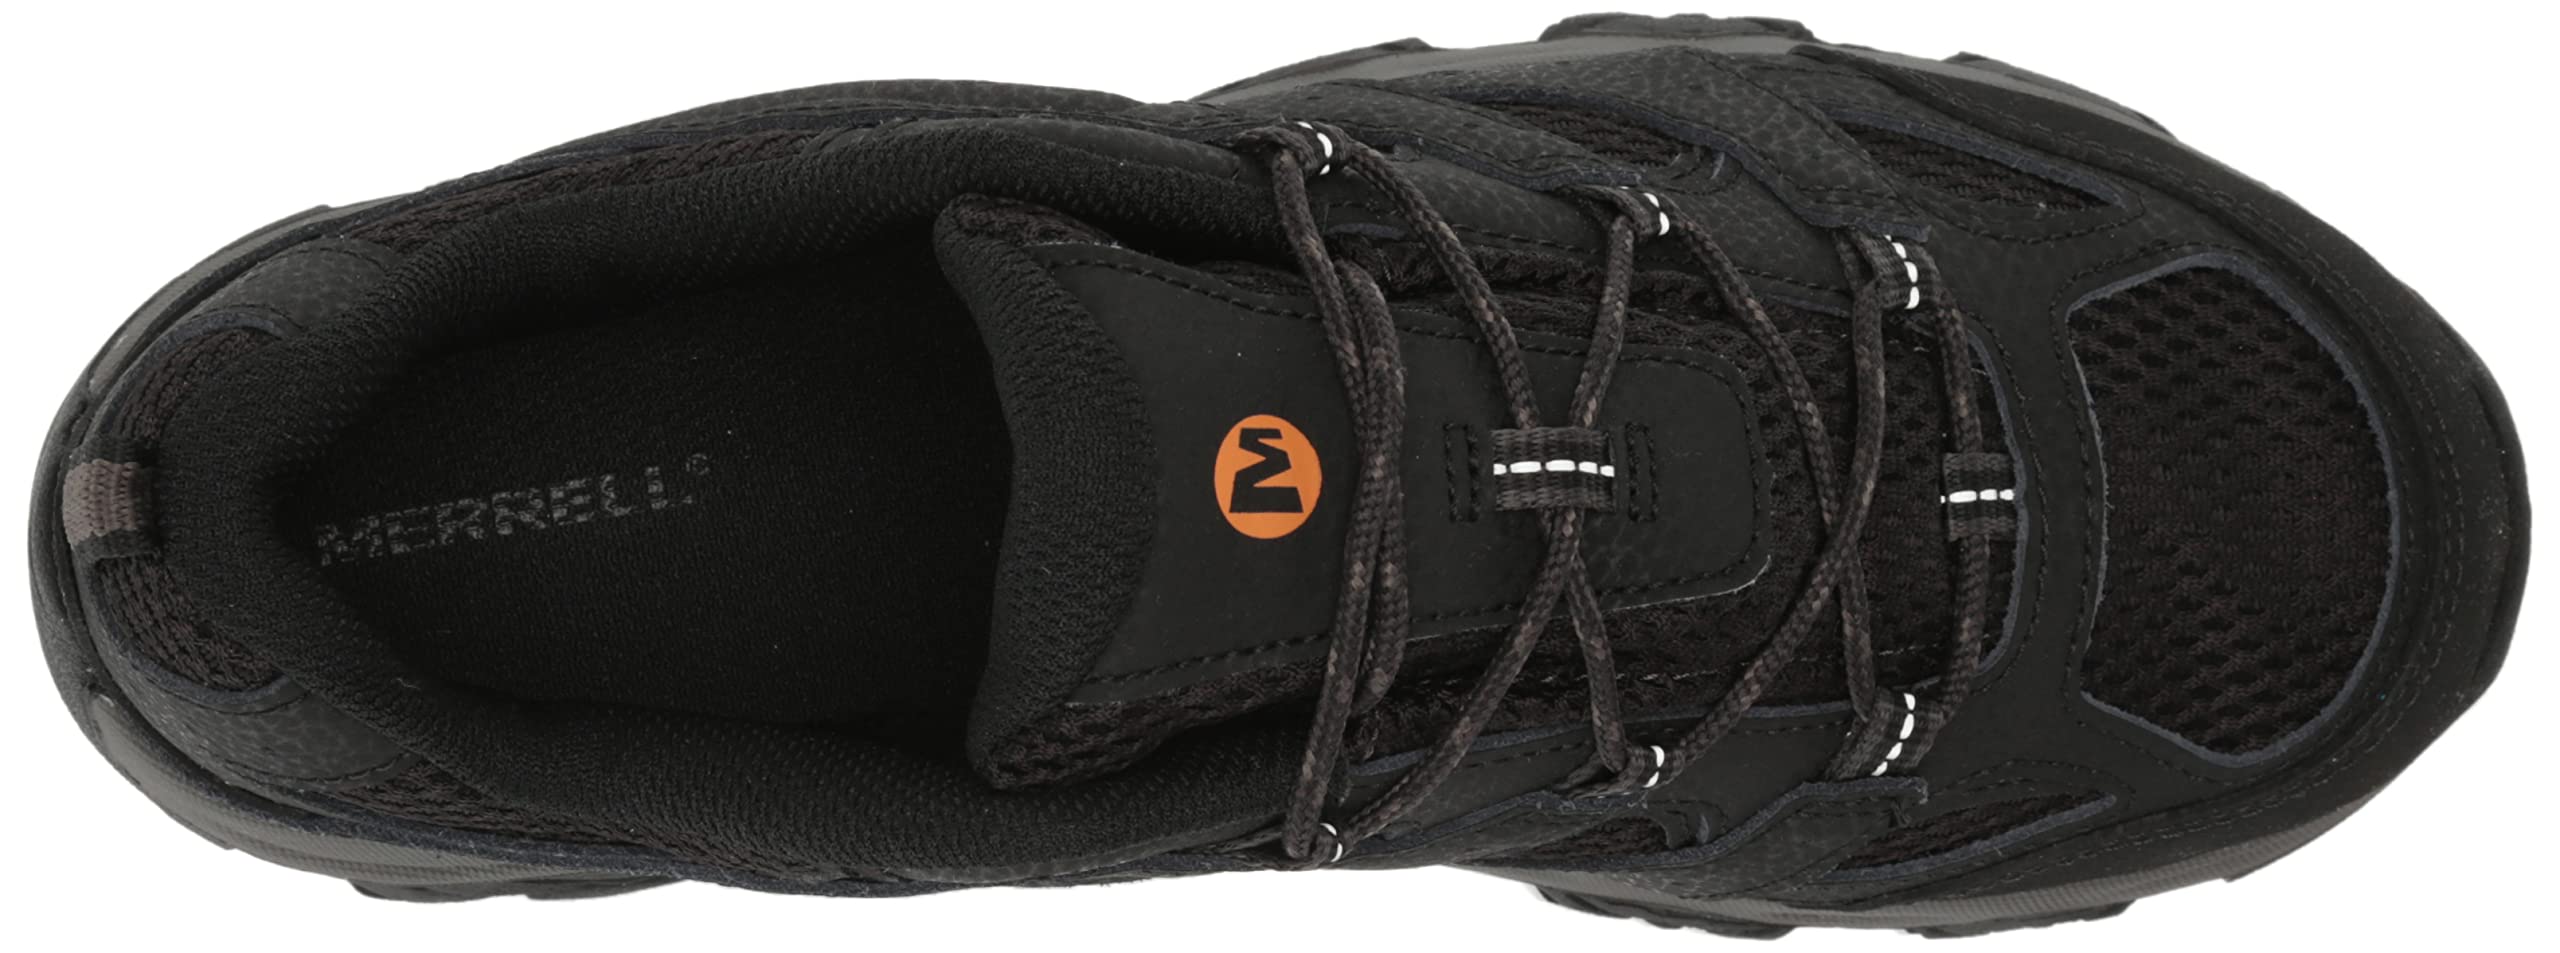 Merrell Unisex-Child Moab 3 Low Hiking Shoe